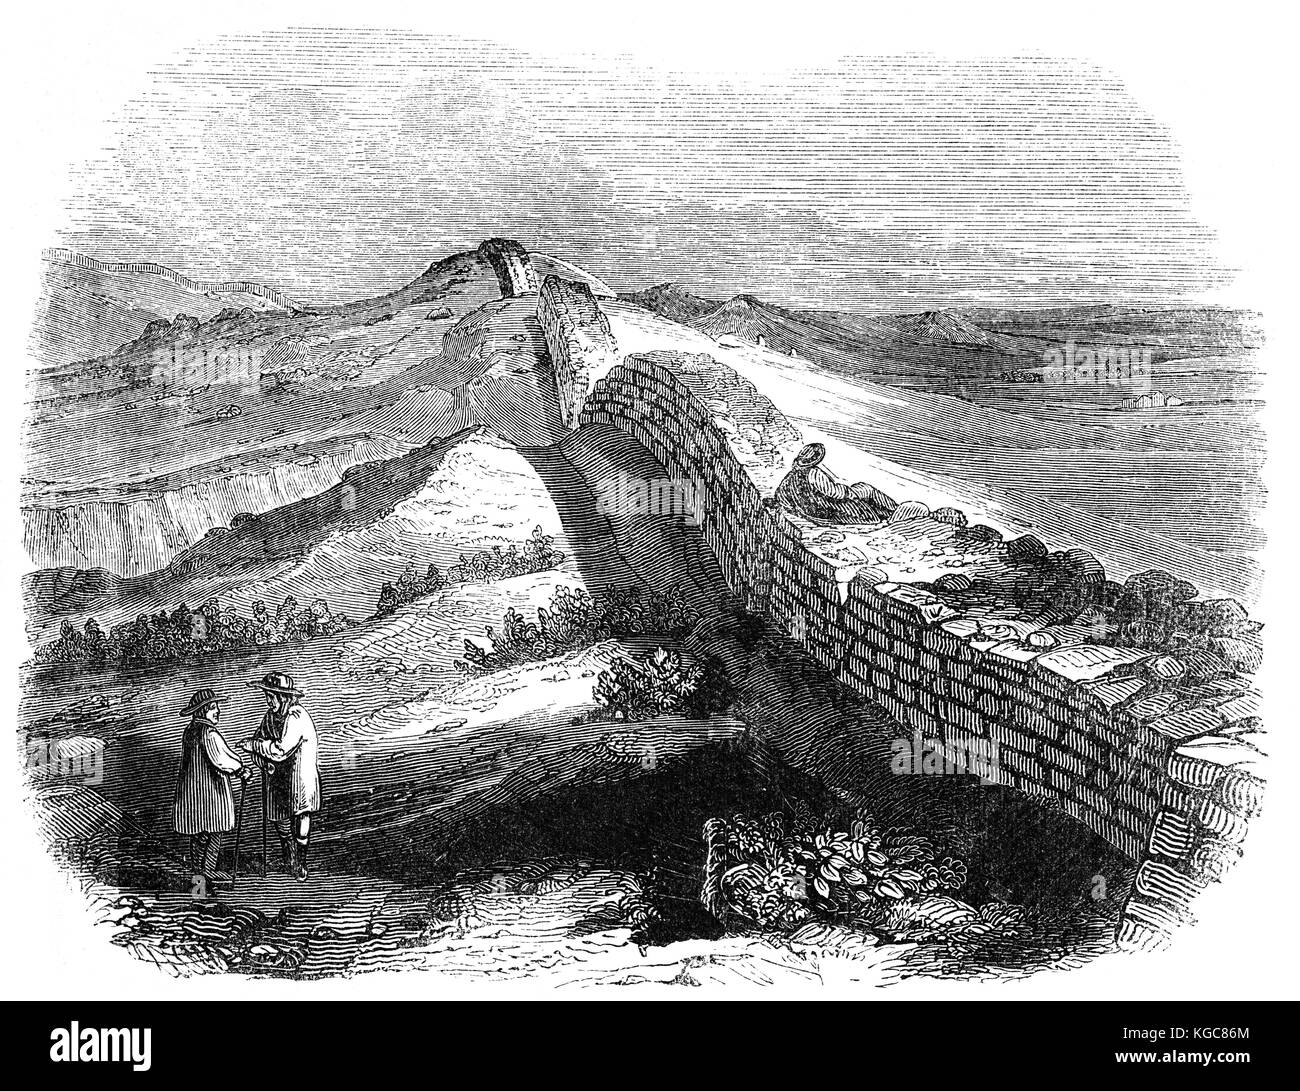 Hadrian's Wall genannt auch die römische Mauer bei Housesteads, wurde eine defensive Festung in die römische Provinz Britannia, in AD 122 in der Regierungszeit des Kaisers Hadrian begonnen. Es lief von den Ufern des Flusses Tyne in der Nähe von der Nordsee bis zu den Solway Firth in der Irischen See, und wurde die nördliche Grenze des römischen Reiches. Northumberland, England Stockfoto